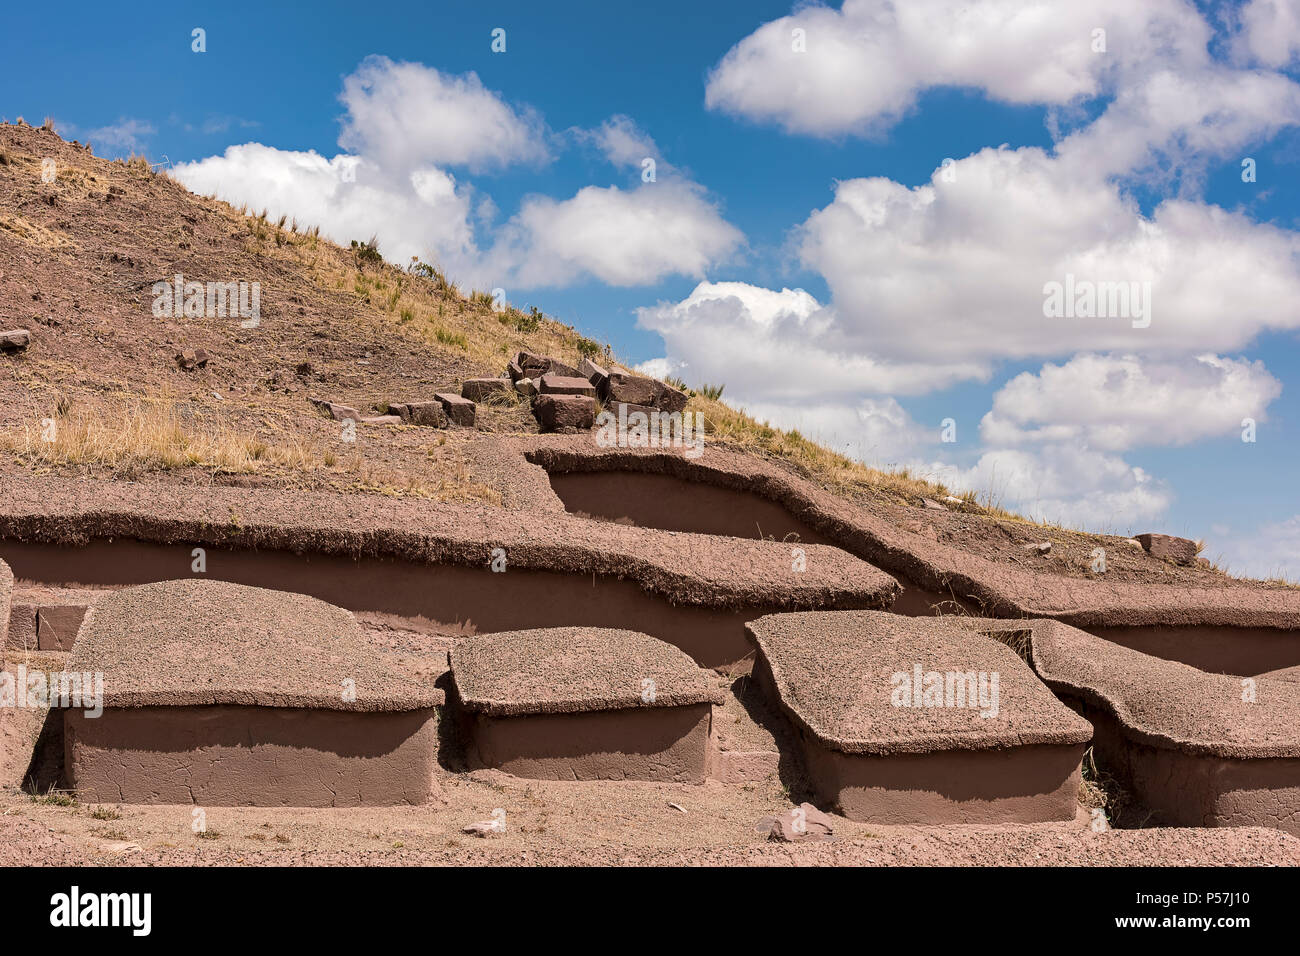 Tihuanaku, ruins of pre-Inca cultures, Bolivia Stock Photo